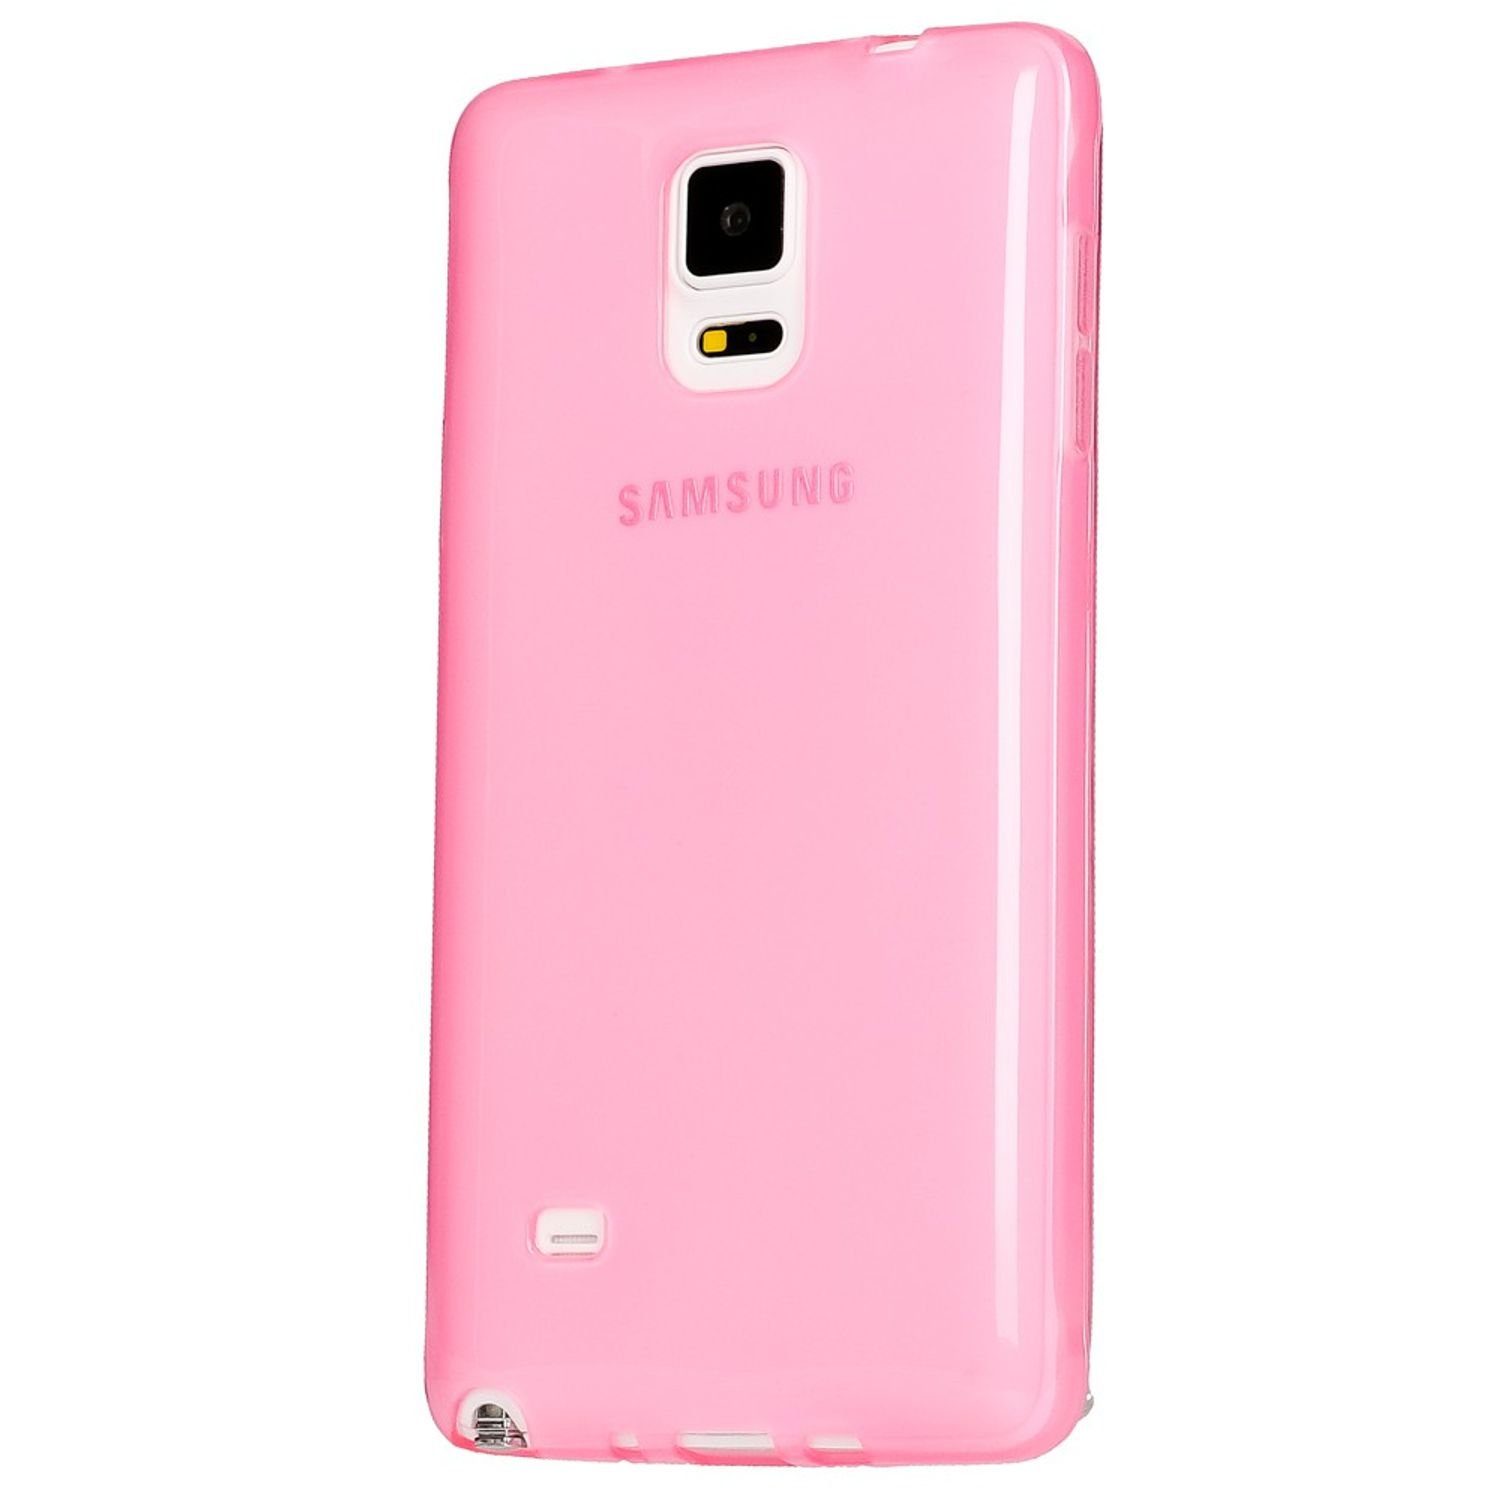 Nalia Smartphone-Hülle Samsung Galaxy Note 4, Durchscheinende Silikon Hülle / Soft Case / Slim Cover